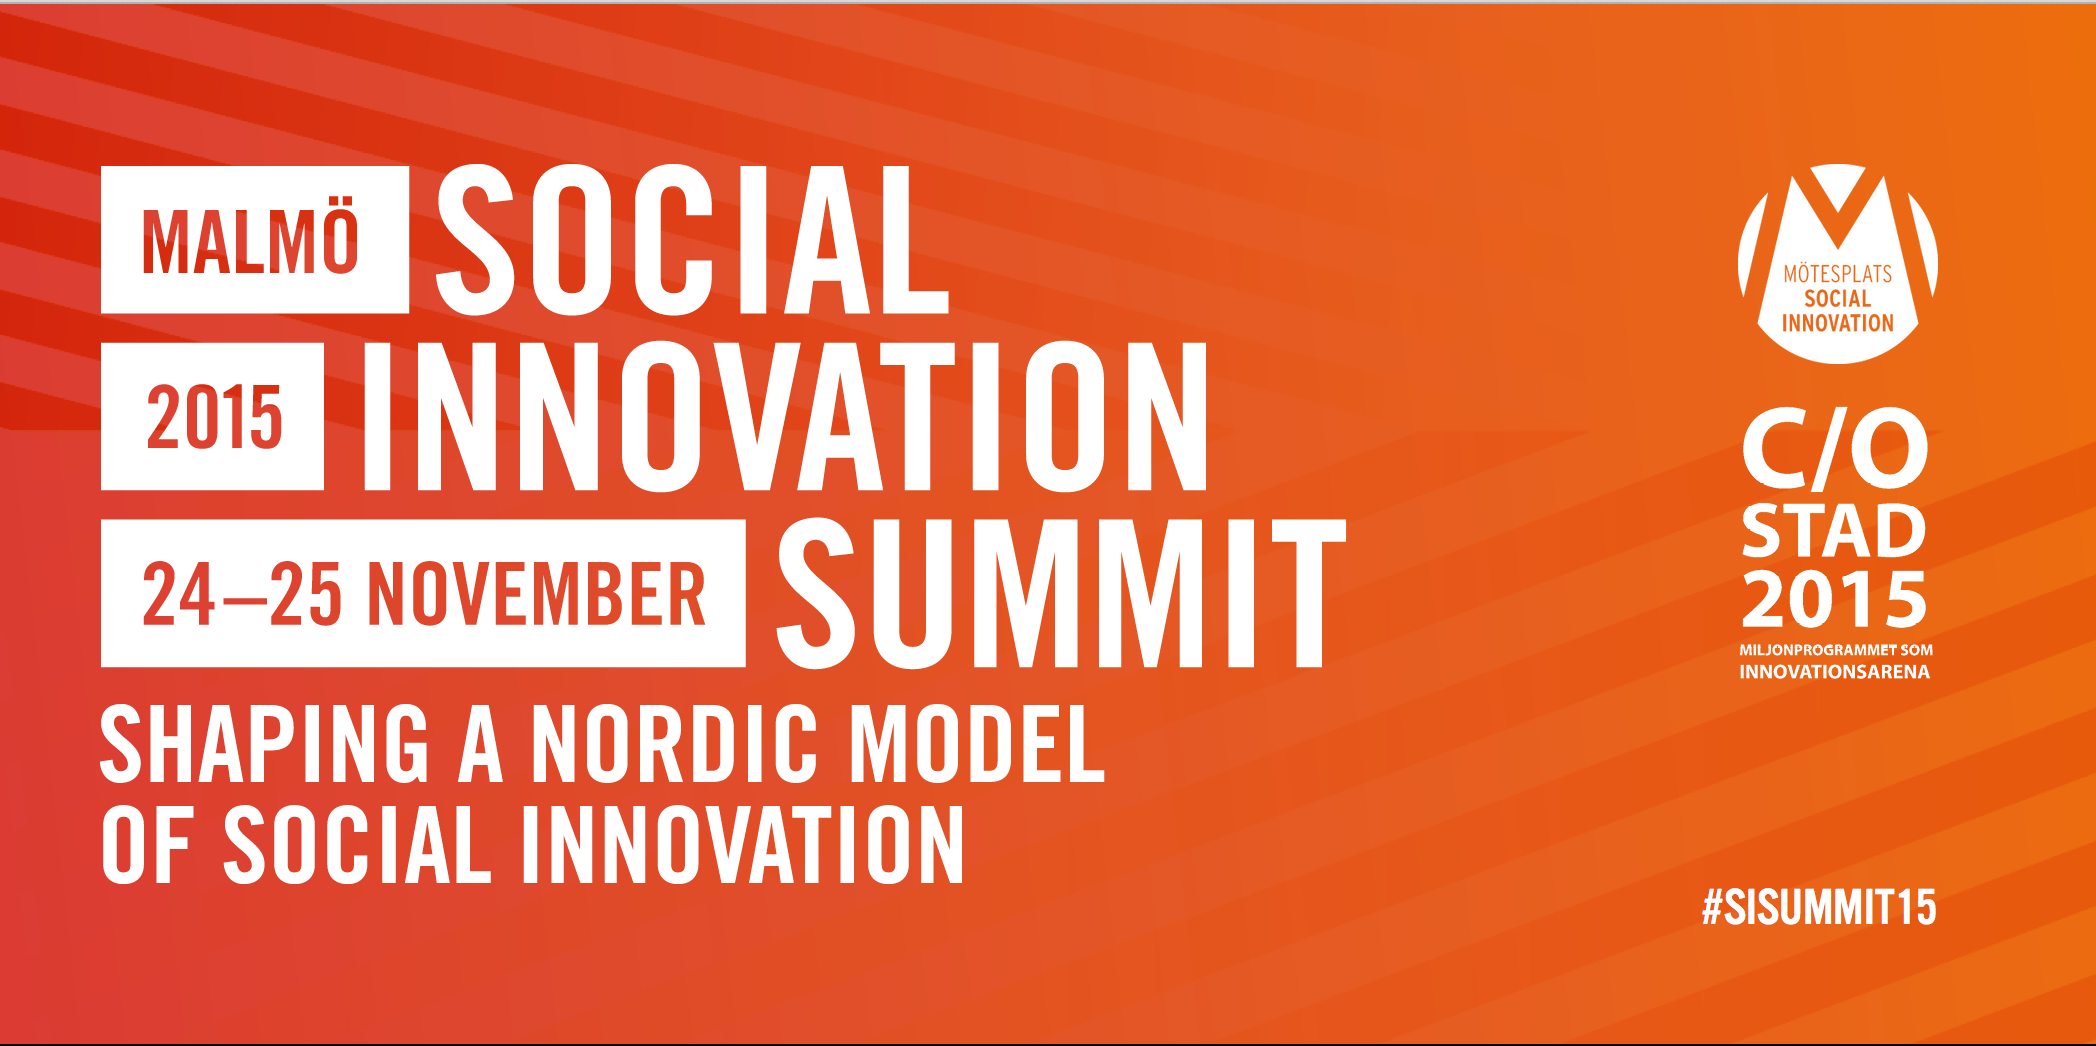 Du är en av de entreprenörer som SEB bjuder på Social Innovation Summit!